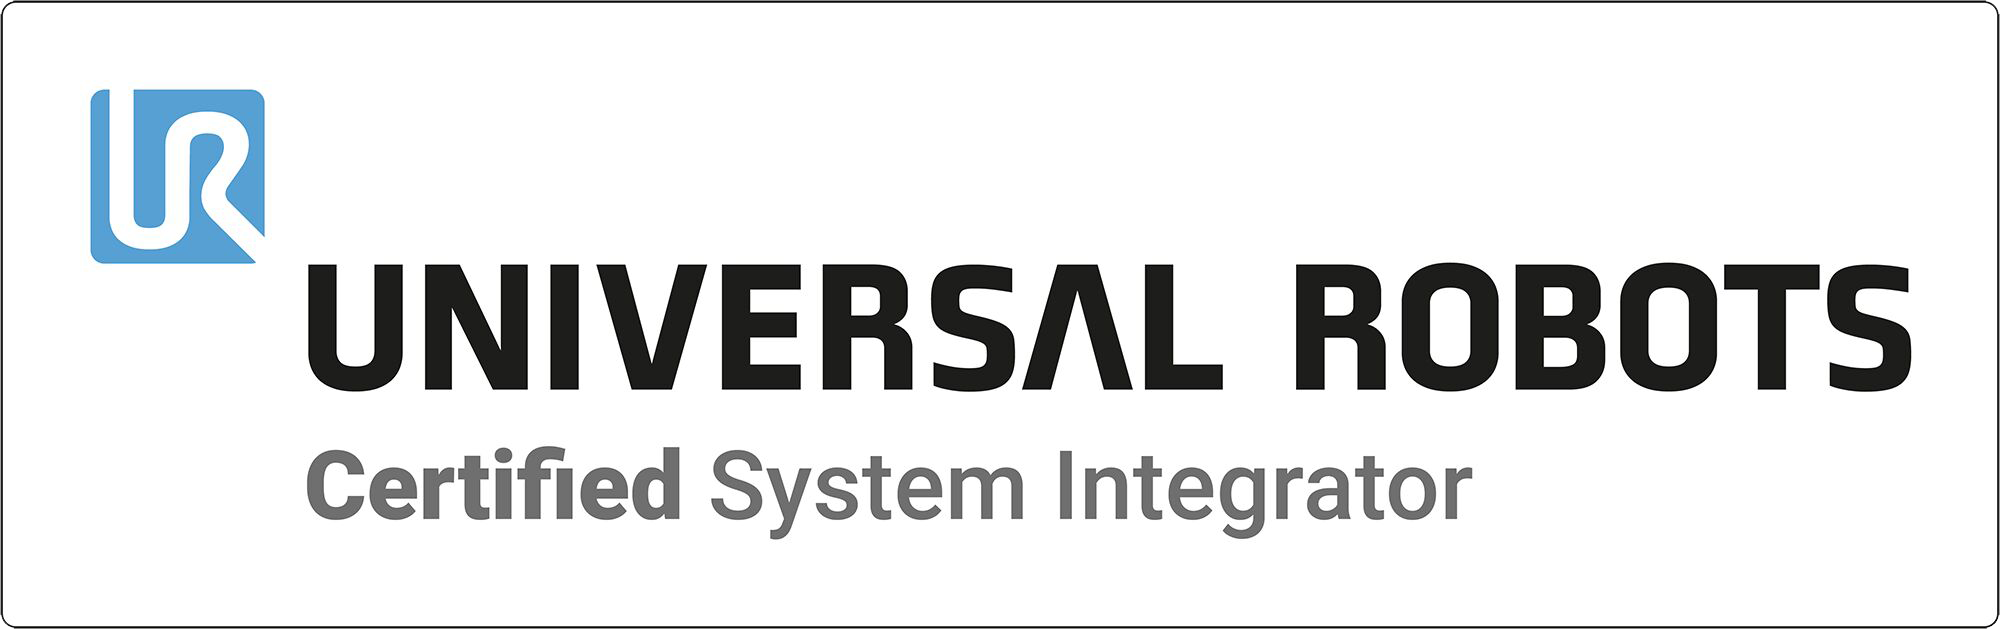 Als dienstältester Universal Robots Certified System Integrator ist DAHL Robotics in Meinerzhagen / Südwestfalen heute wohl der erfahrenste Cobot-Spezialist auf dem deutschen Markt.